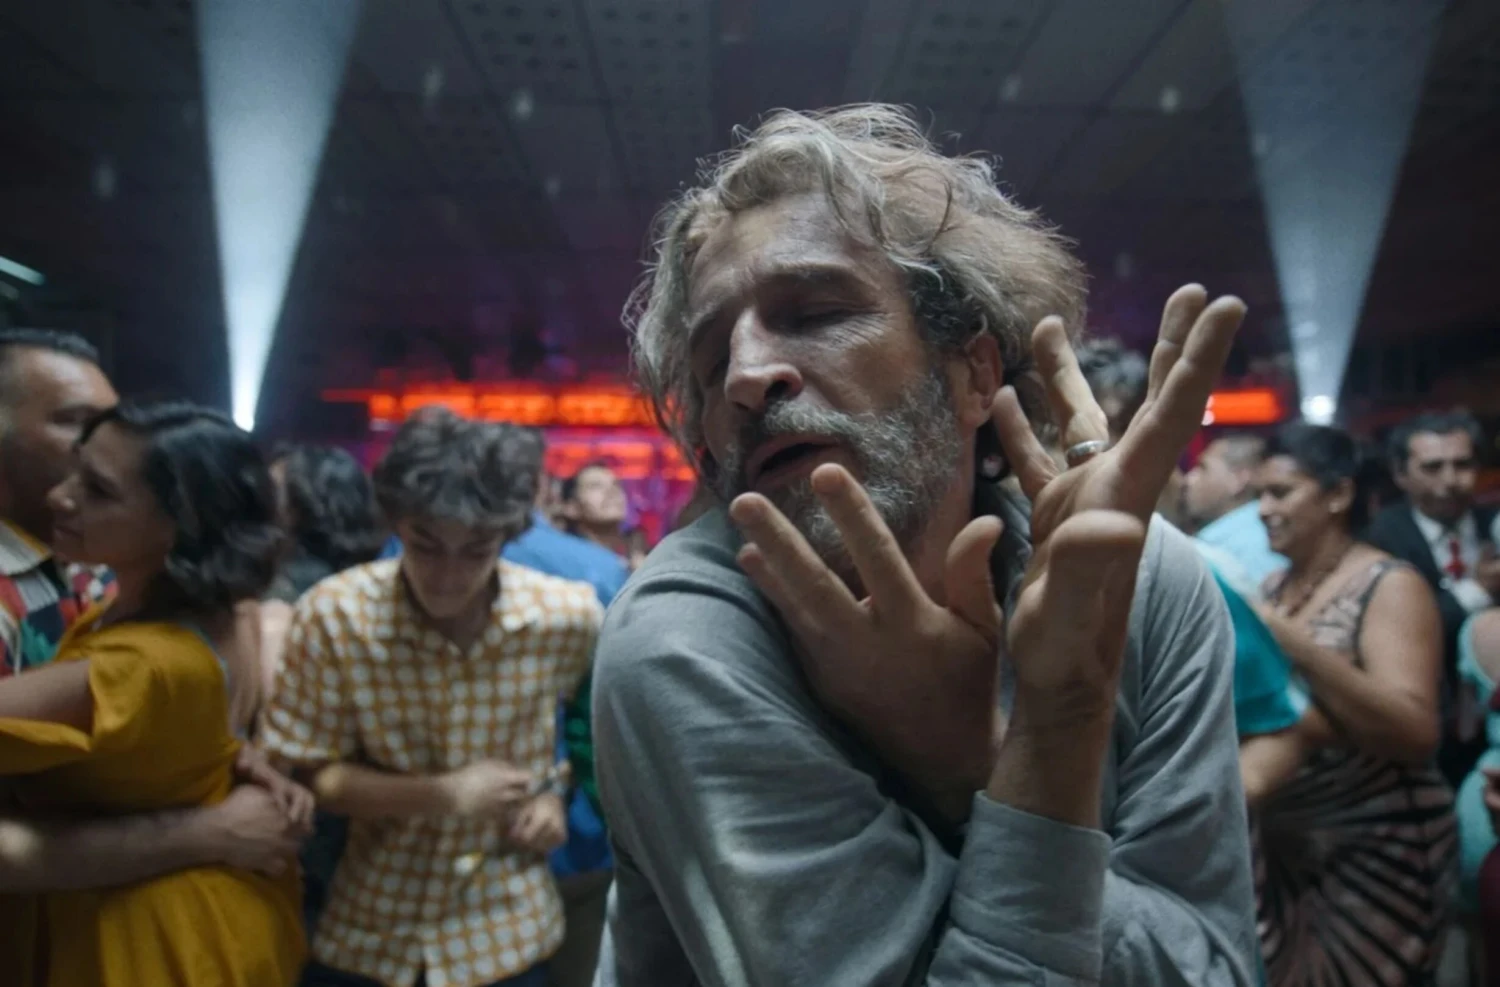 Falešná kronika několika pravd. Iñárritu se na Netflixu dojímá nad smrtí, otcovstvím i Mexikem